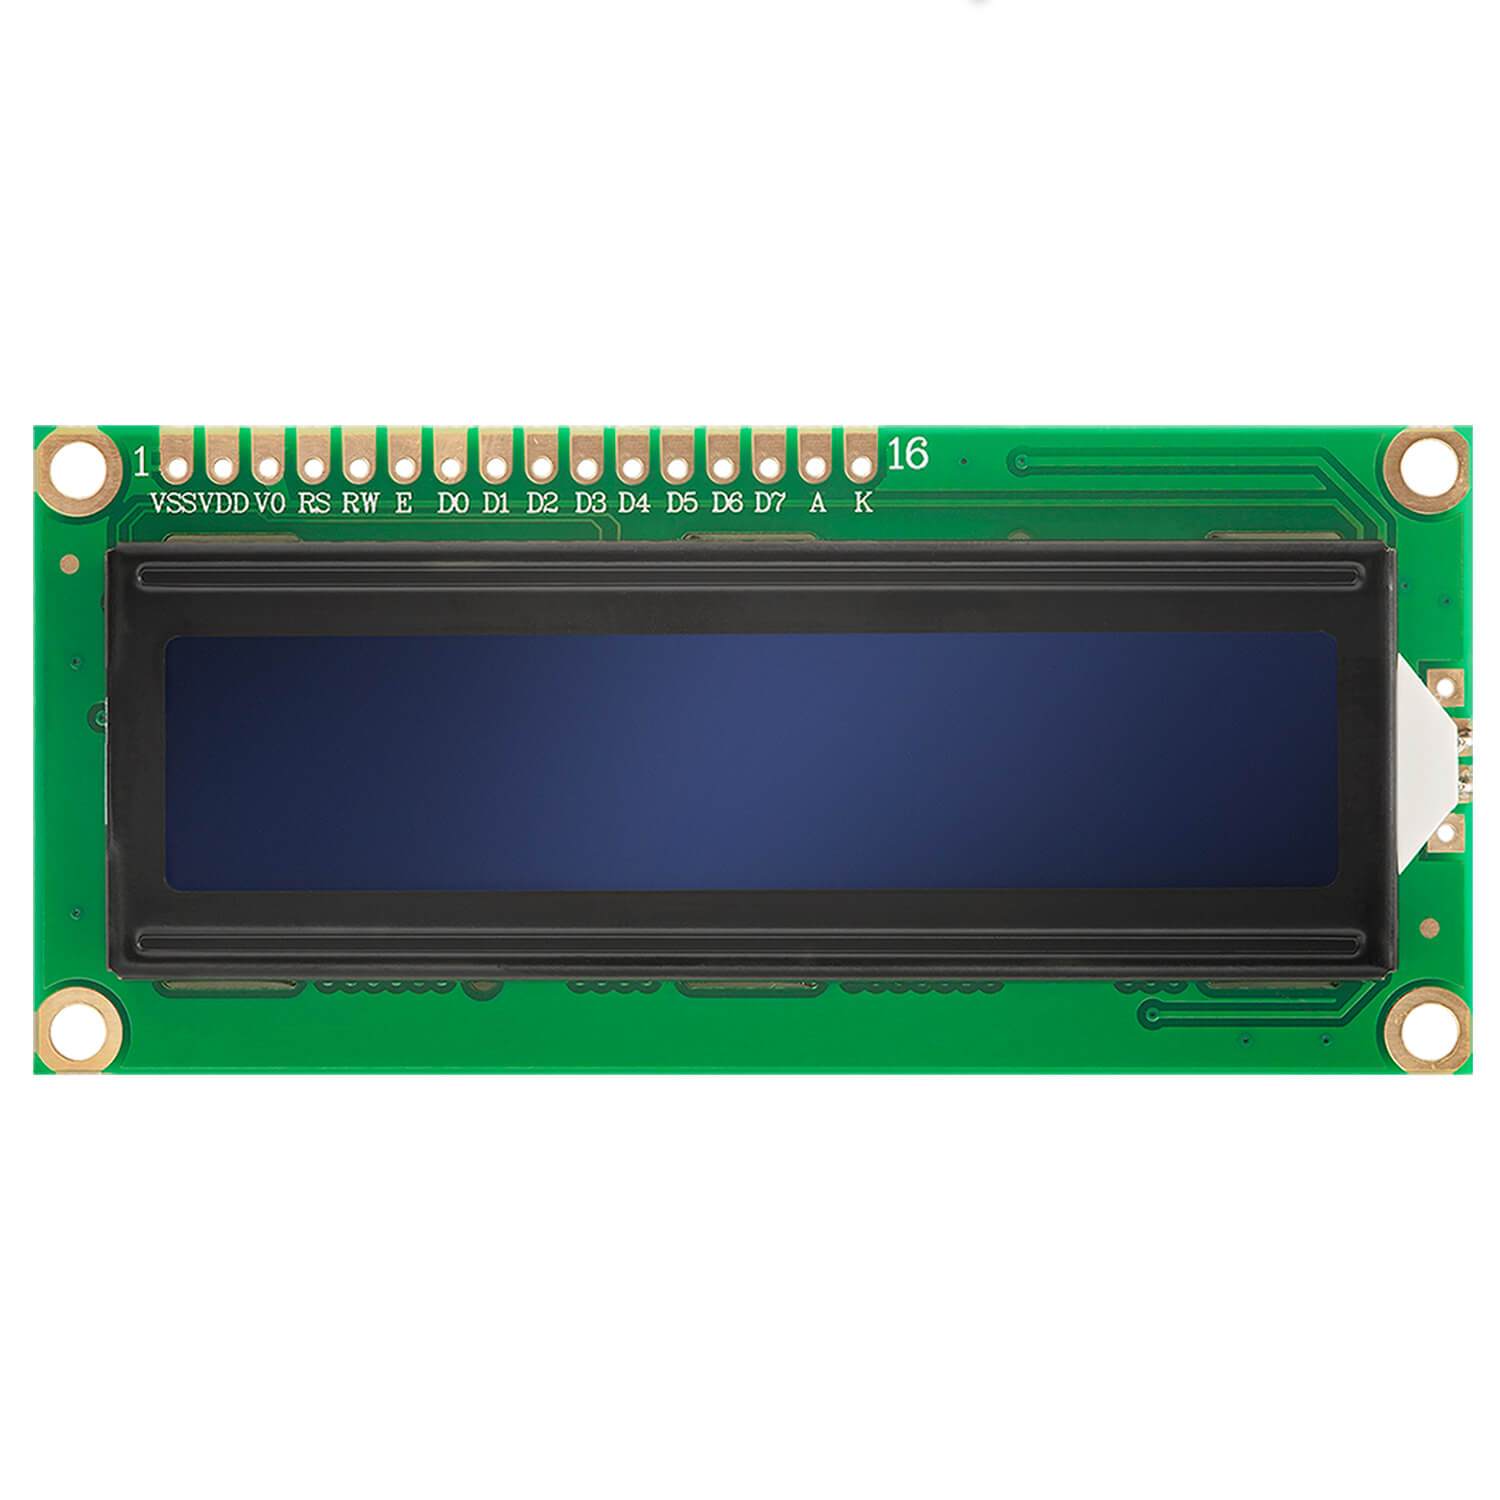 HD44780 1602 LCD Modul Display 2x16 Zeichen (mit blauem Hintergrund) kompatibel mit Arduino und Raspberry Pi - AZ-Delivery